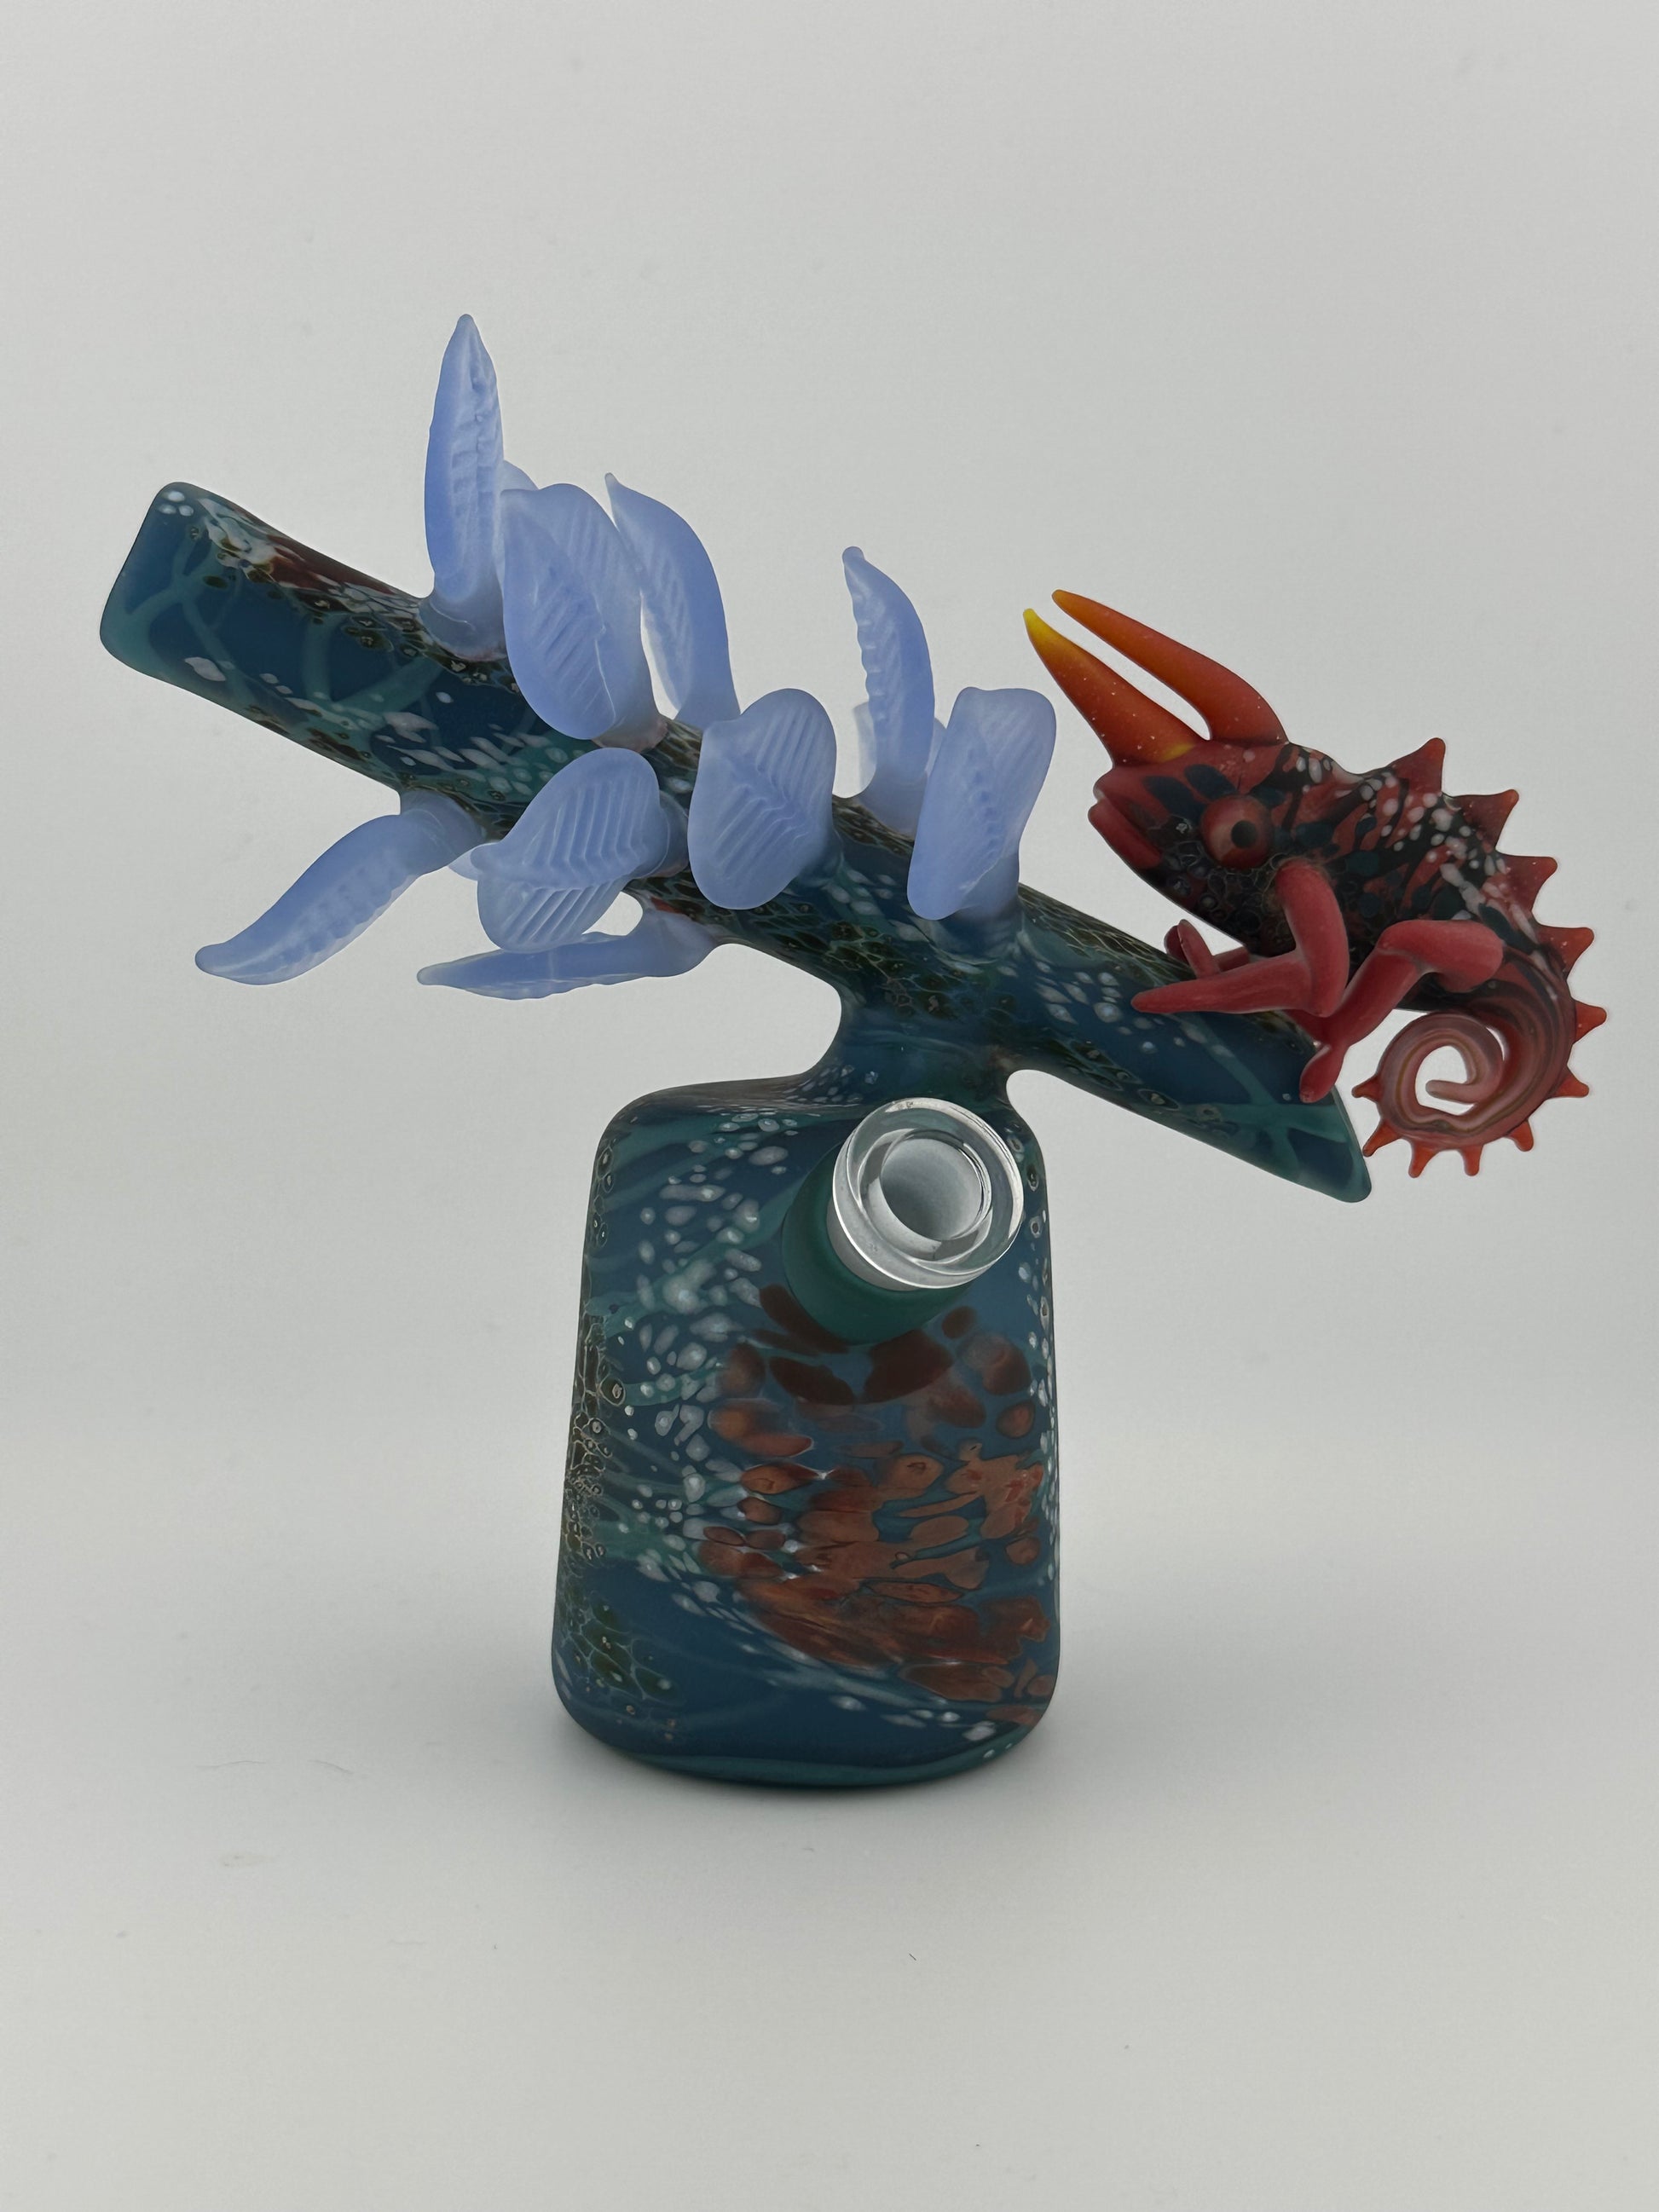 Hardman Art Glass Chameleon Hand sculpted hand made blue